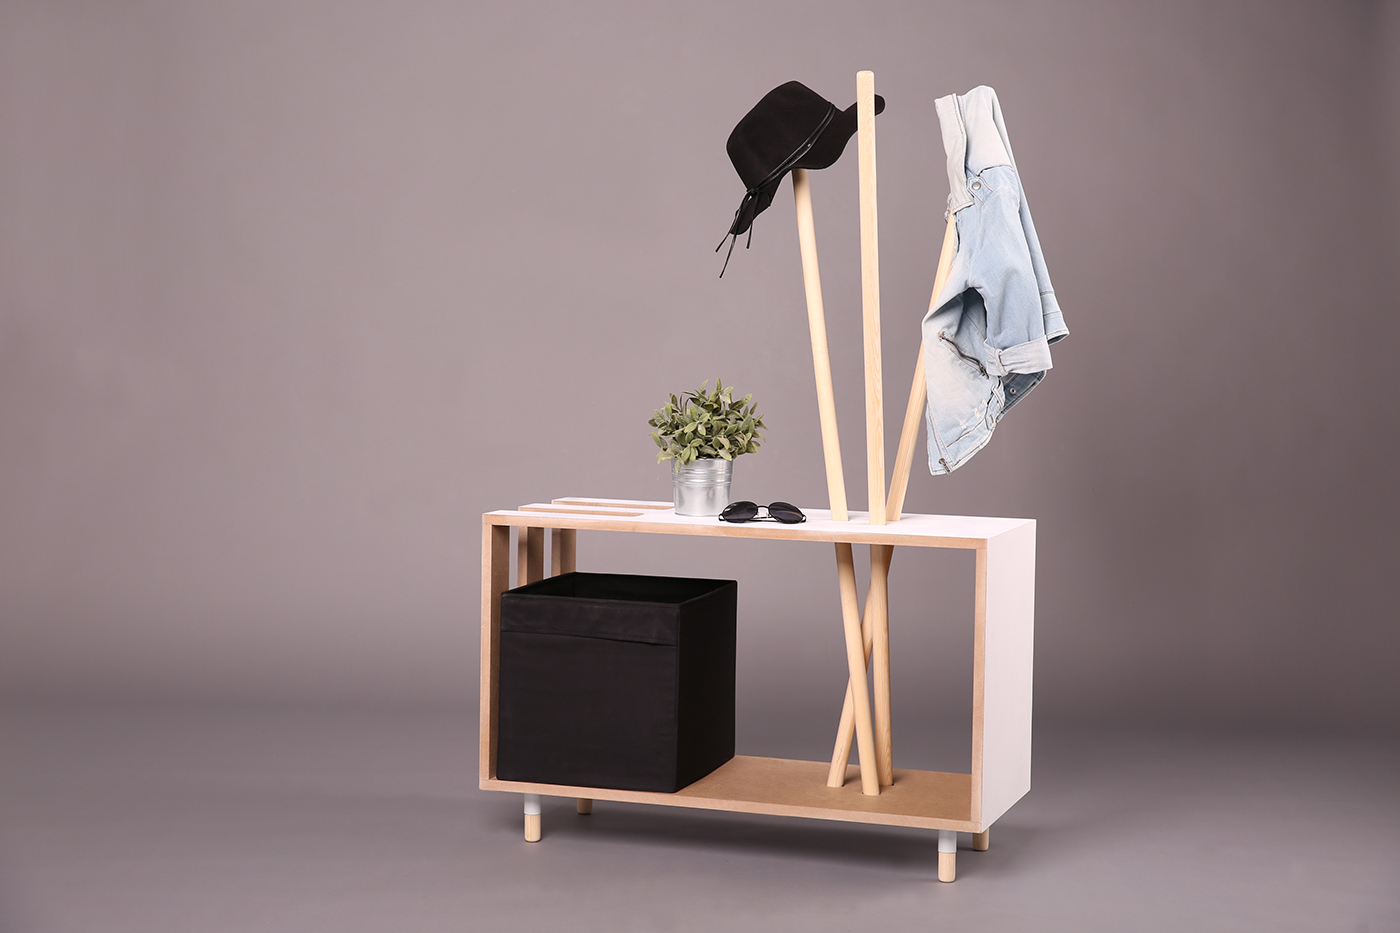 design furniture Projest modern nomad modern